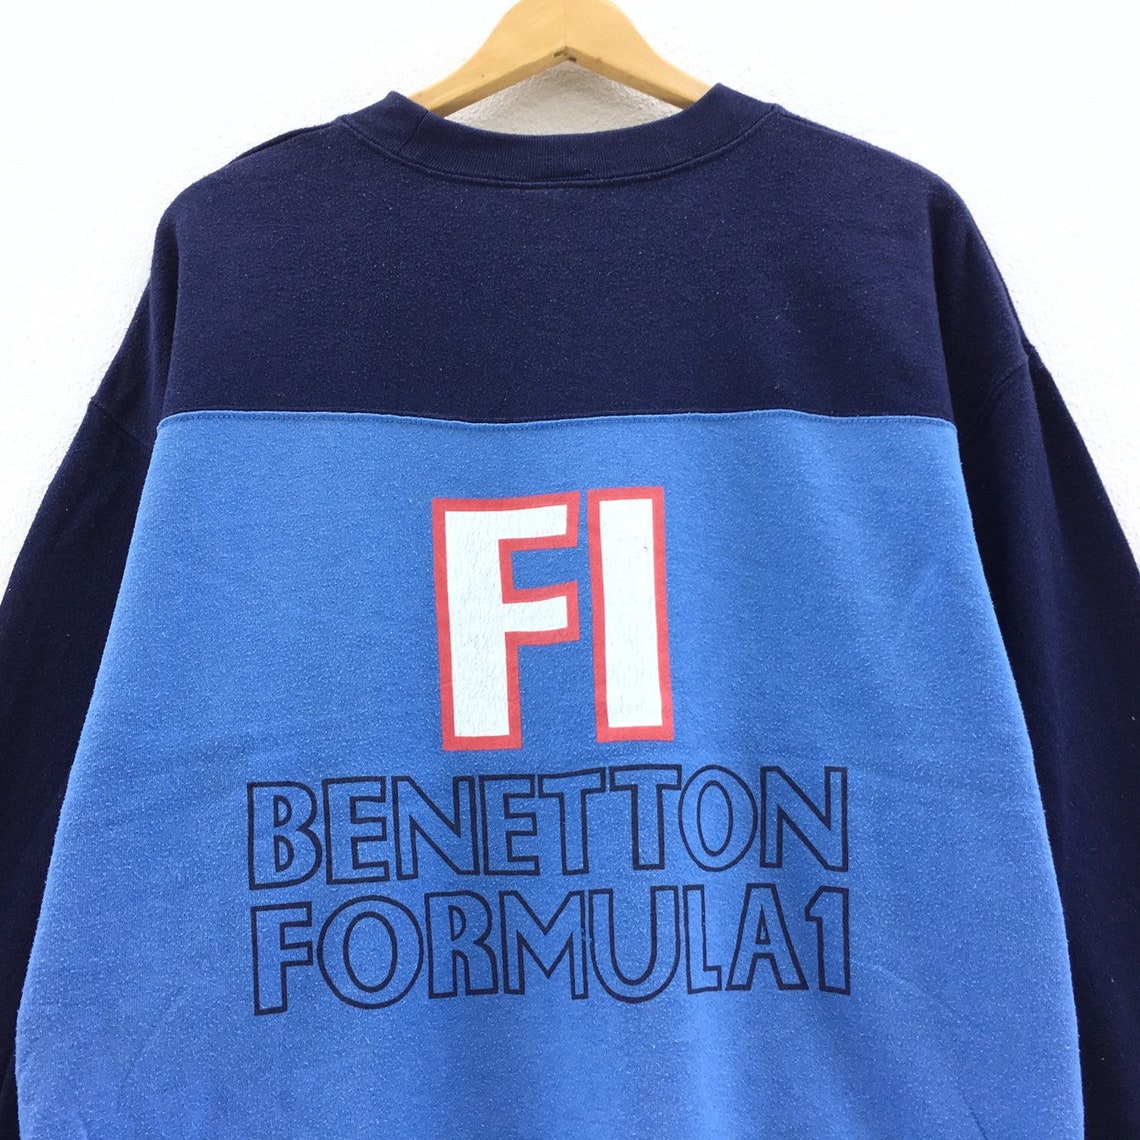 Vintage United Colors of Benetton Formula One Sweatshirt Big - Etsy UK